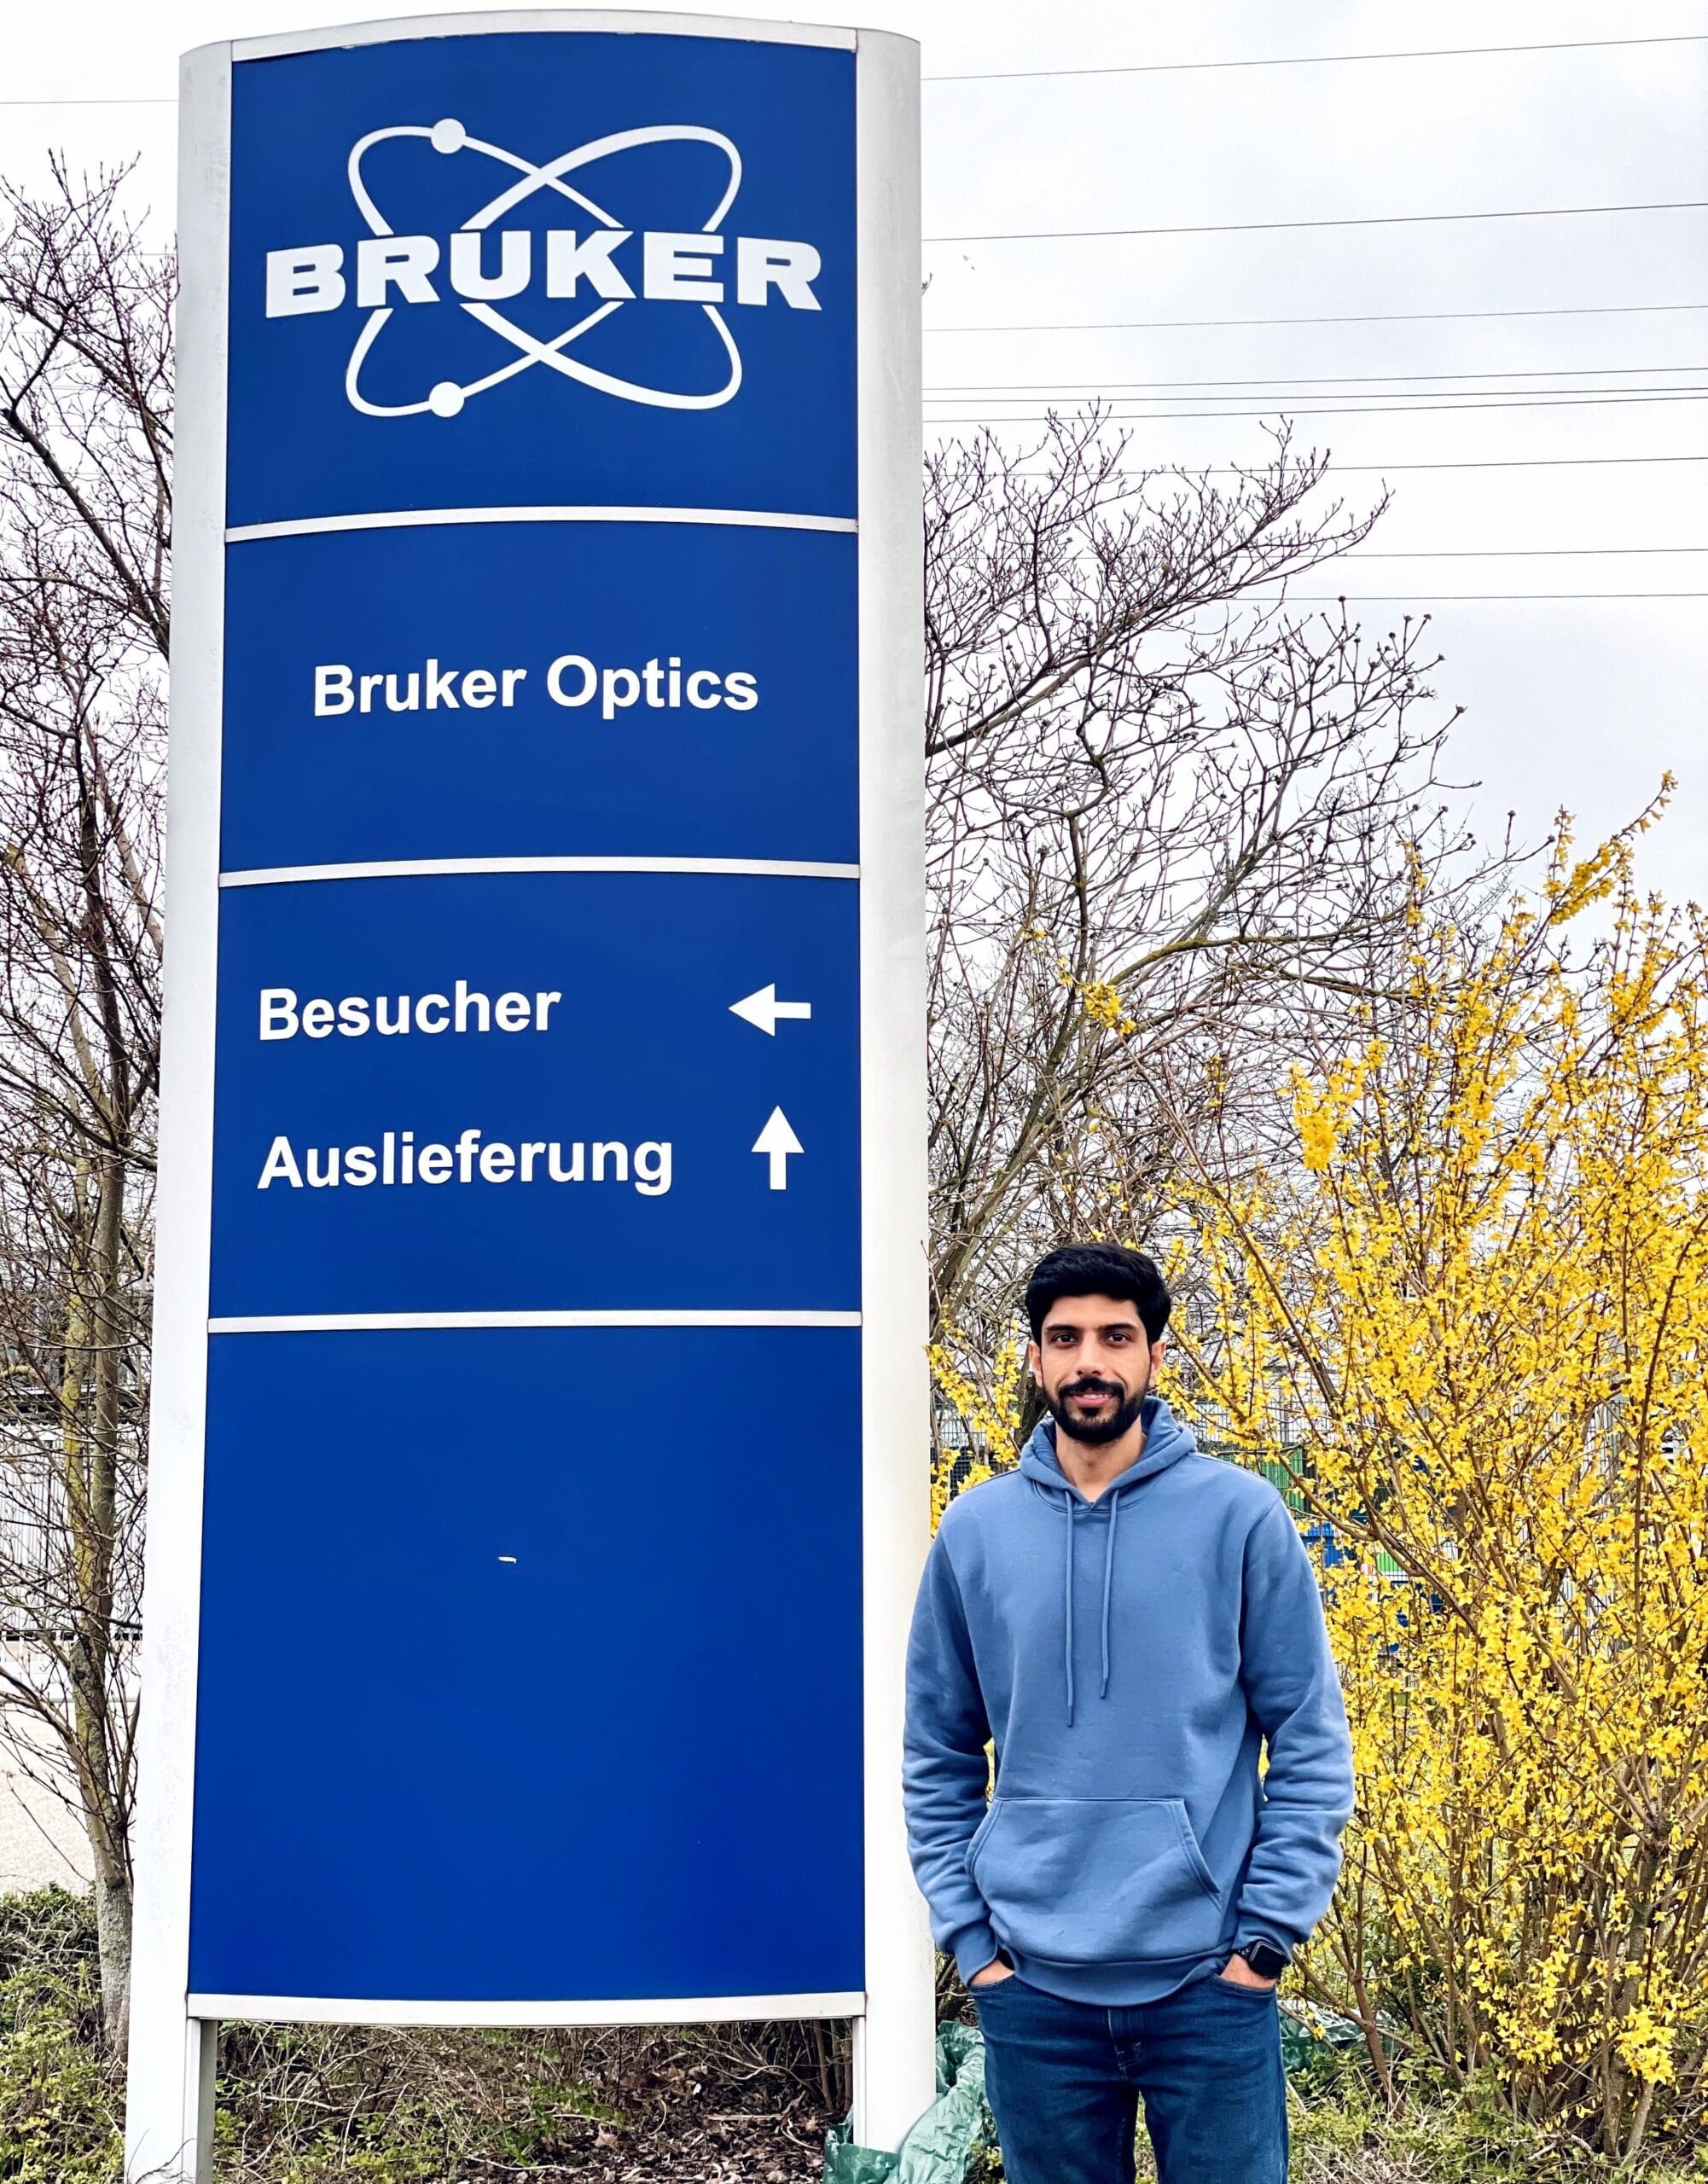 Ahmed Saad Chromatography Field Service Engineer at Bruker Optics training